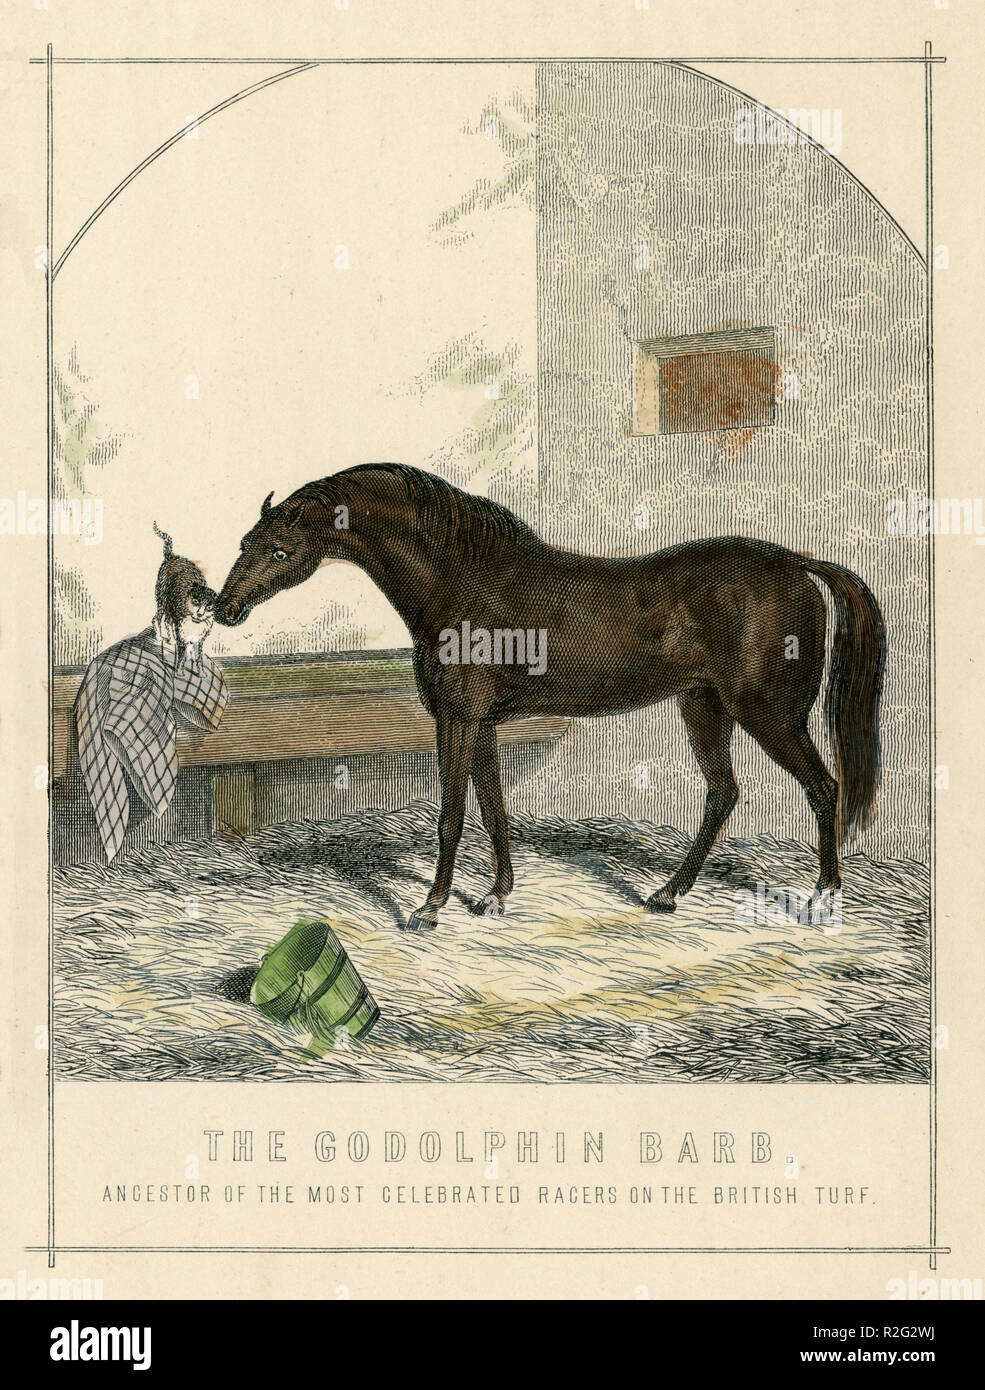 Arabian Horse: Godolphin Arabian oder Godolphin Barb (* Ca. 1724/1725; † Dezember 1753), Hengst, "Die Godolphin Barb. Vorfahren der gefeierten Racers auf dem britischen Rasen.', William Mackenzie Stockfoto